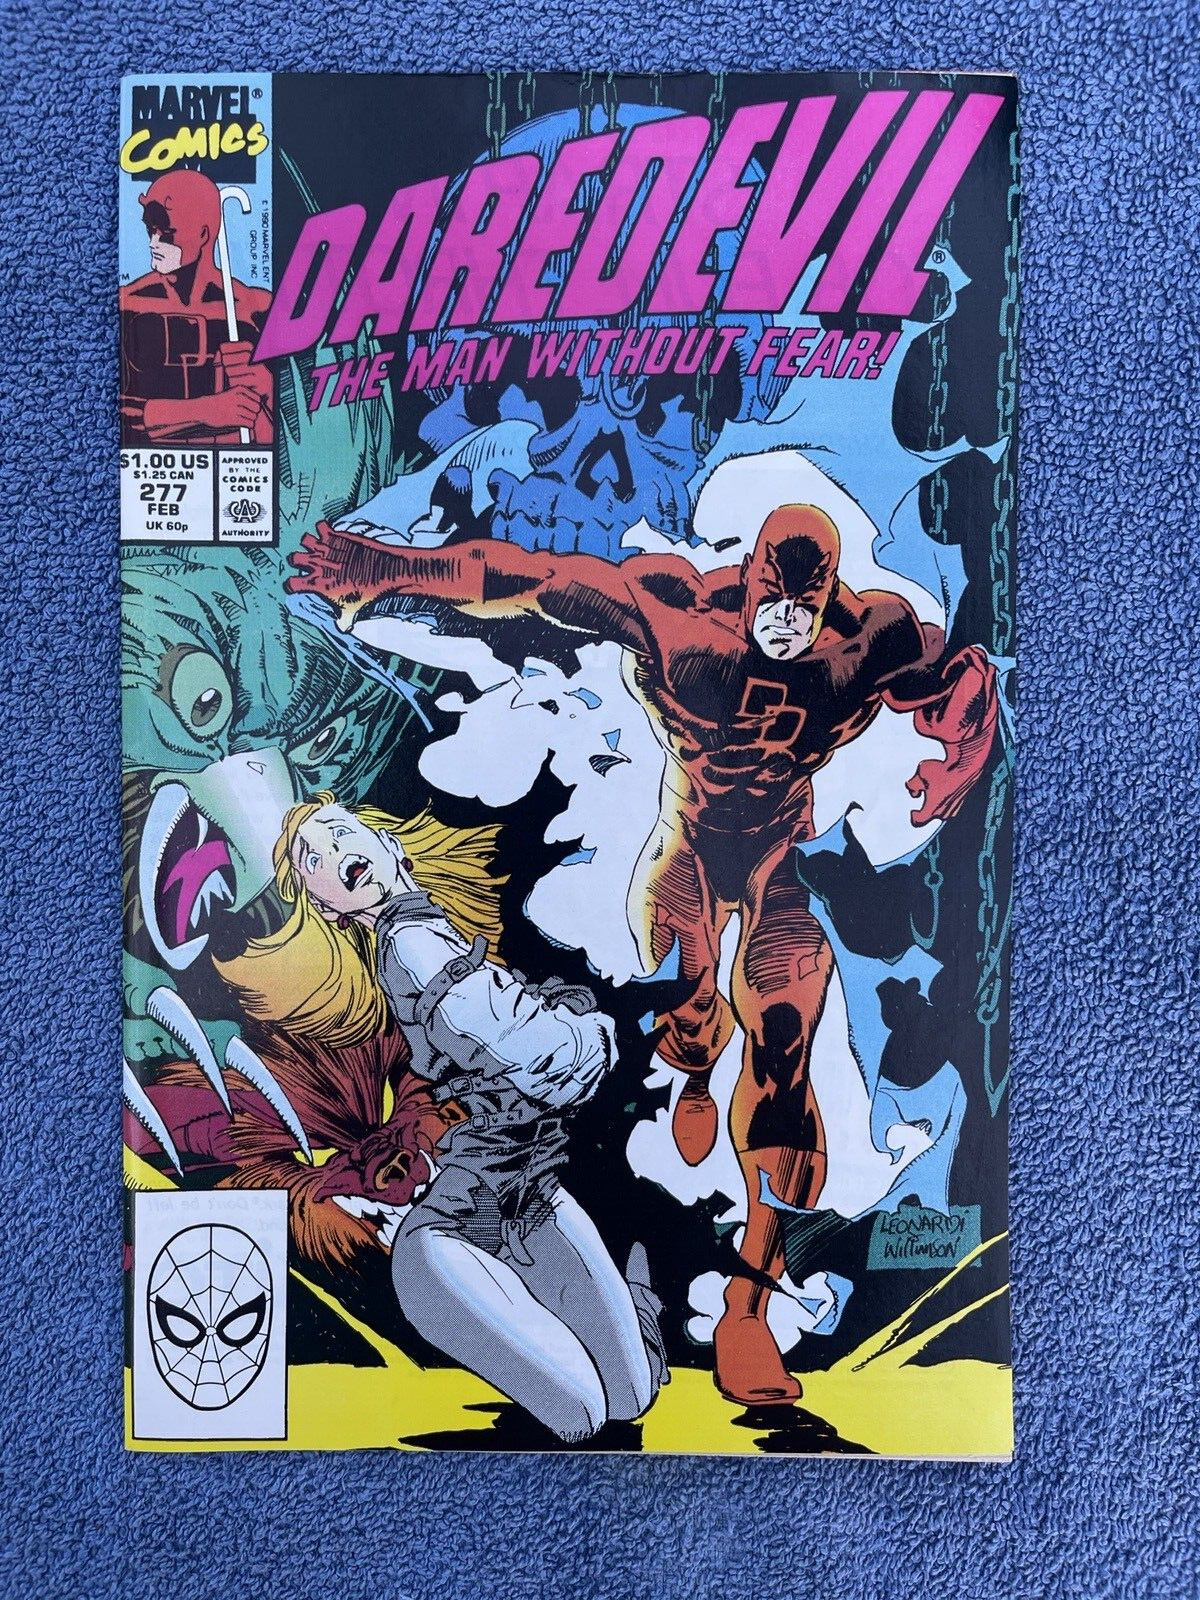 DAREDEVIL #277 (Marvel, 1990) Rick Leonardi